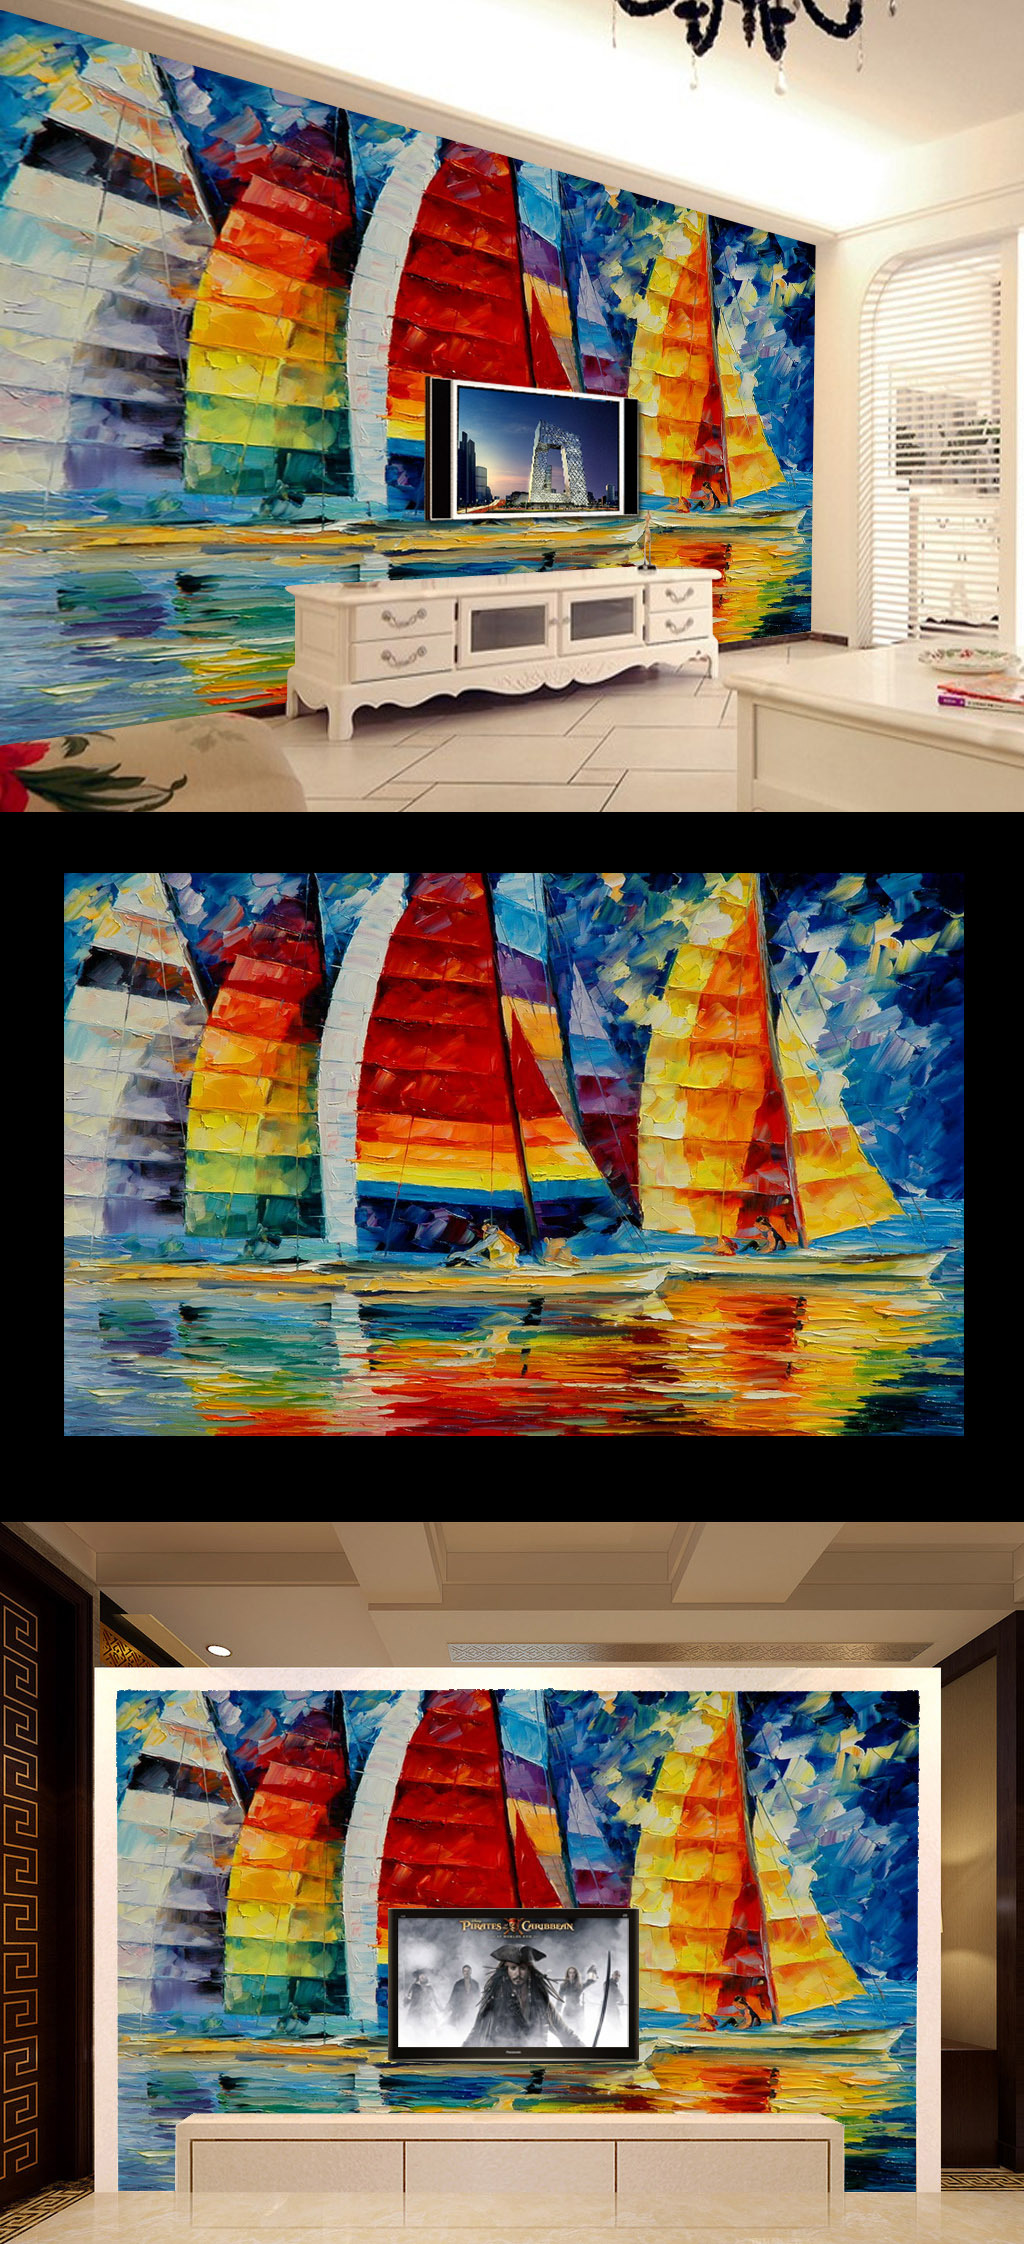 背景墙 电视 客厅 风景画/[版权图片]一帆风顺风景画水彩油画壁画客厅电视背景墙